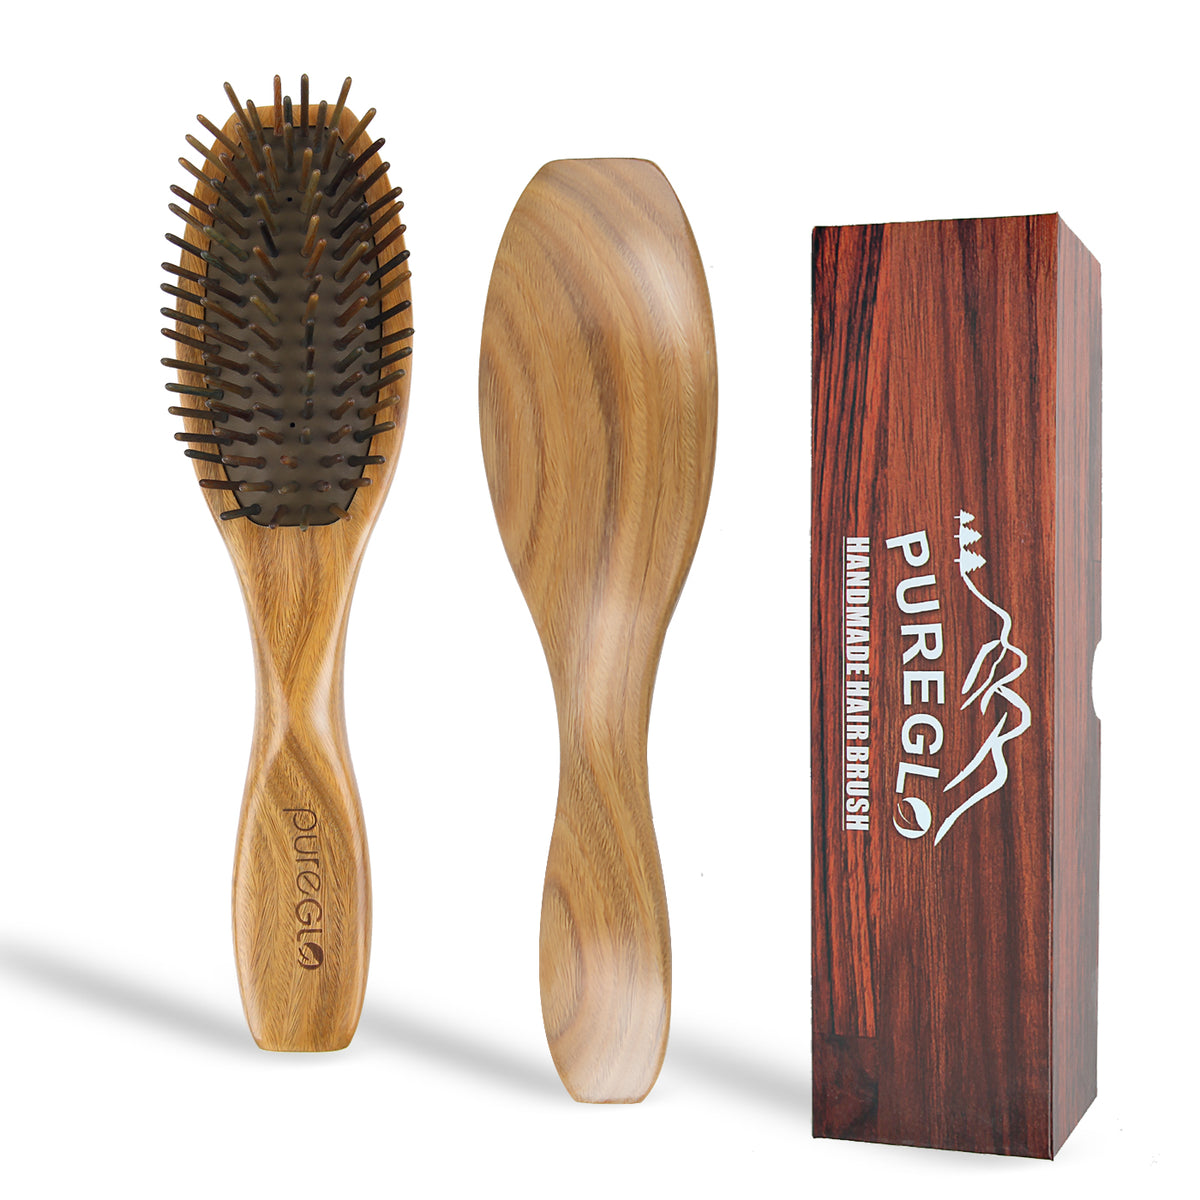 Natural Bamboo Bristle Body Bath Brush – pureGLO Naturals